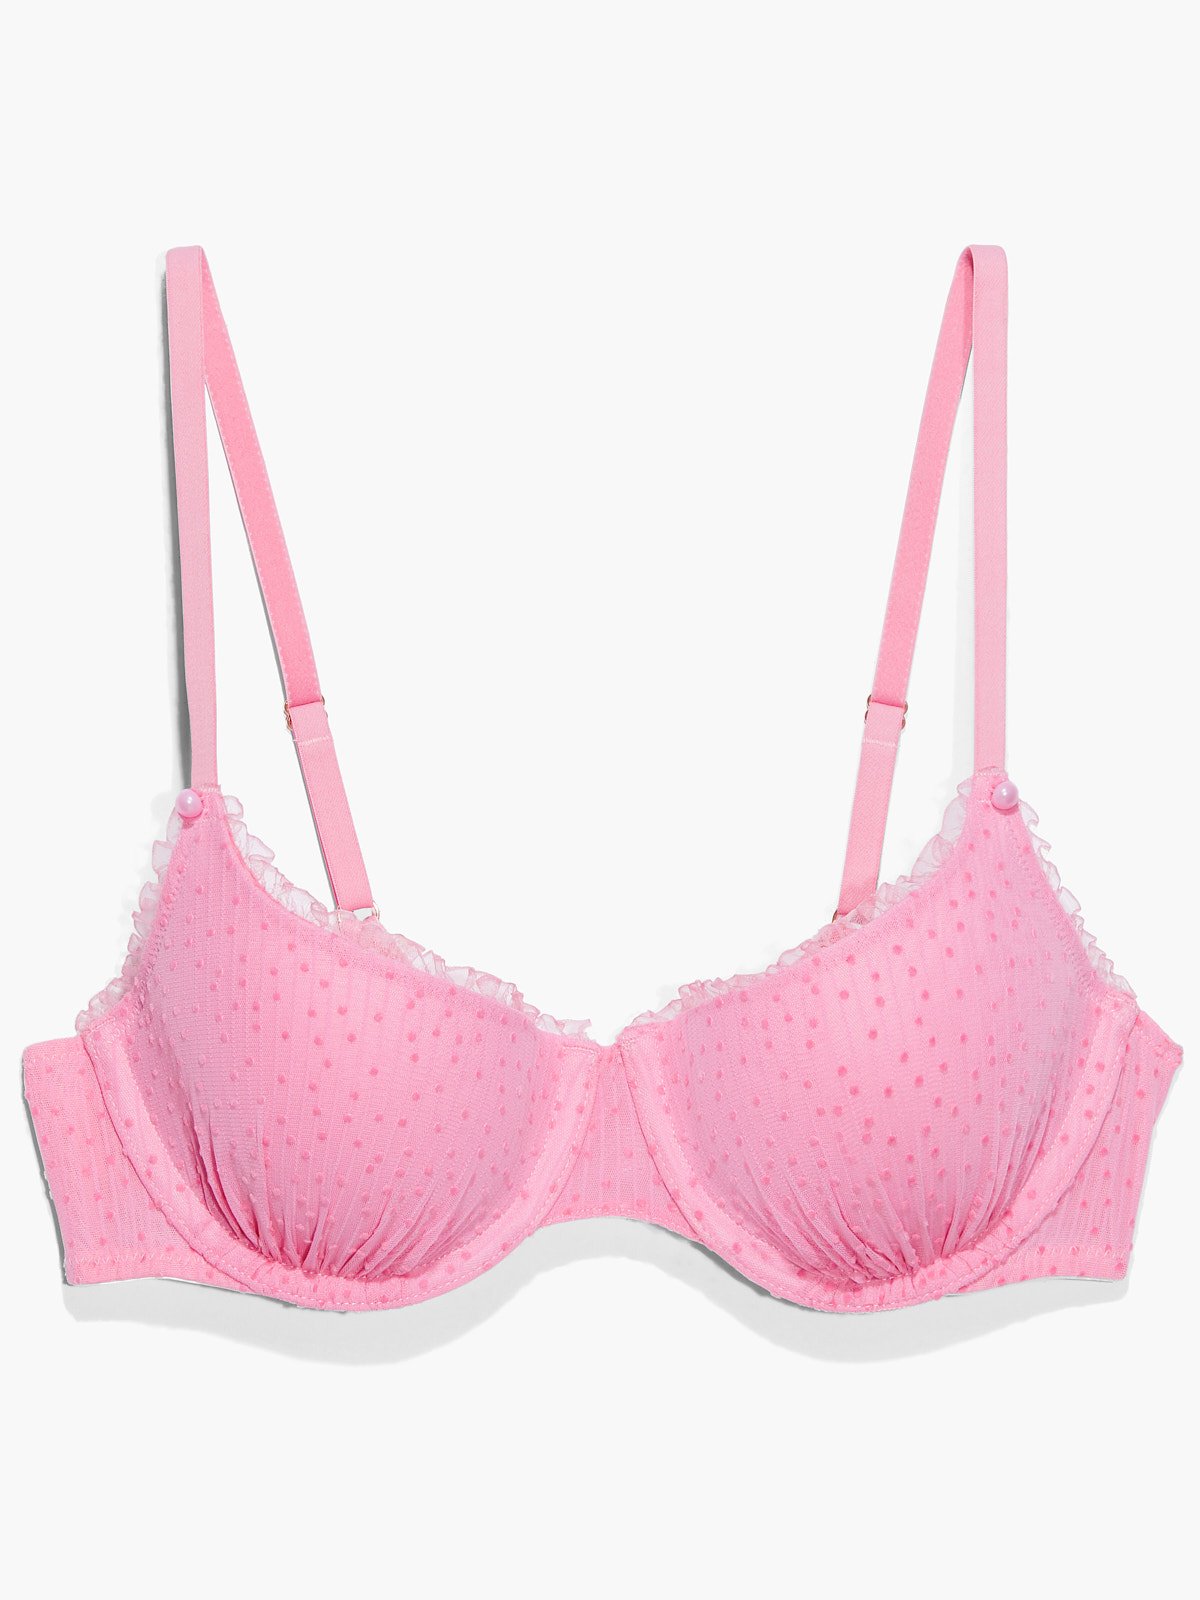 Buy PrettyCat Wired T-shirt Balconette Bra - Pink online